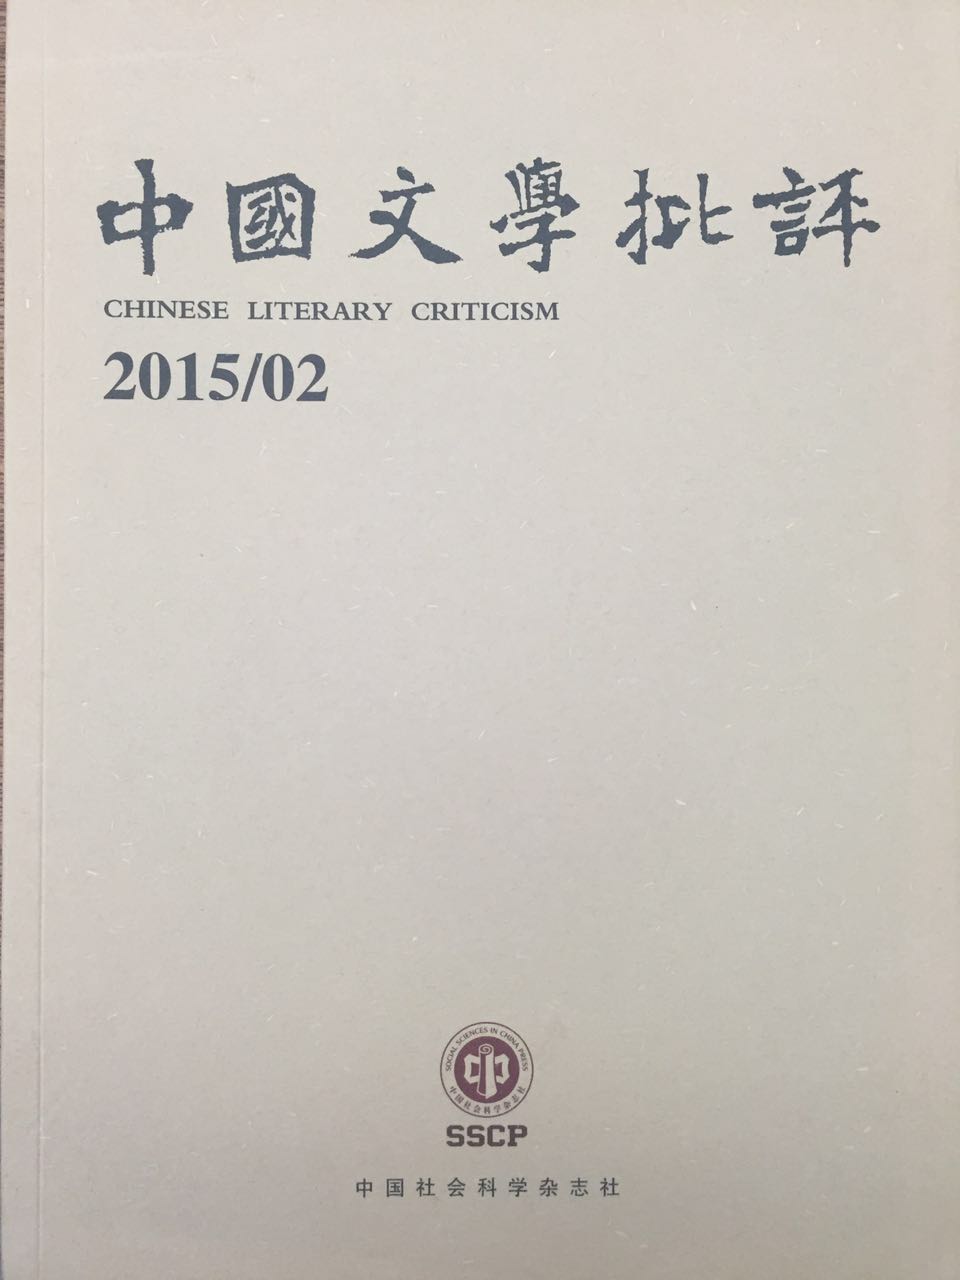  中国文学批评 